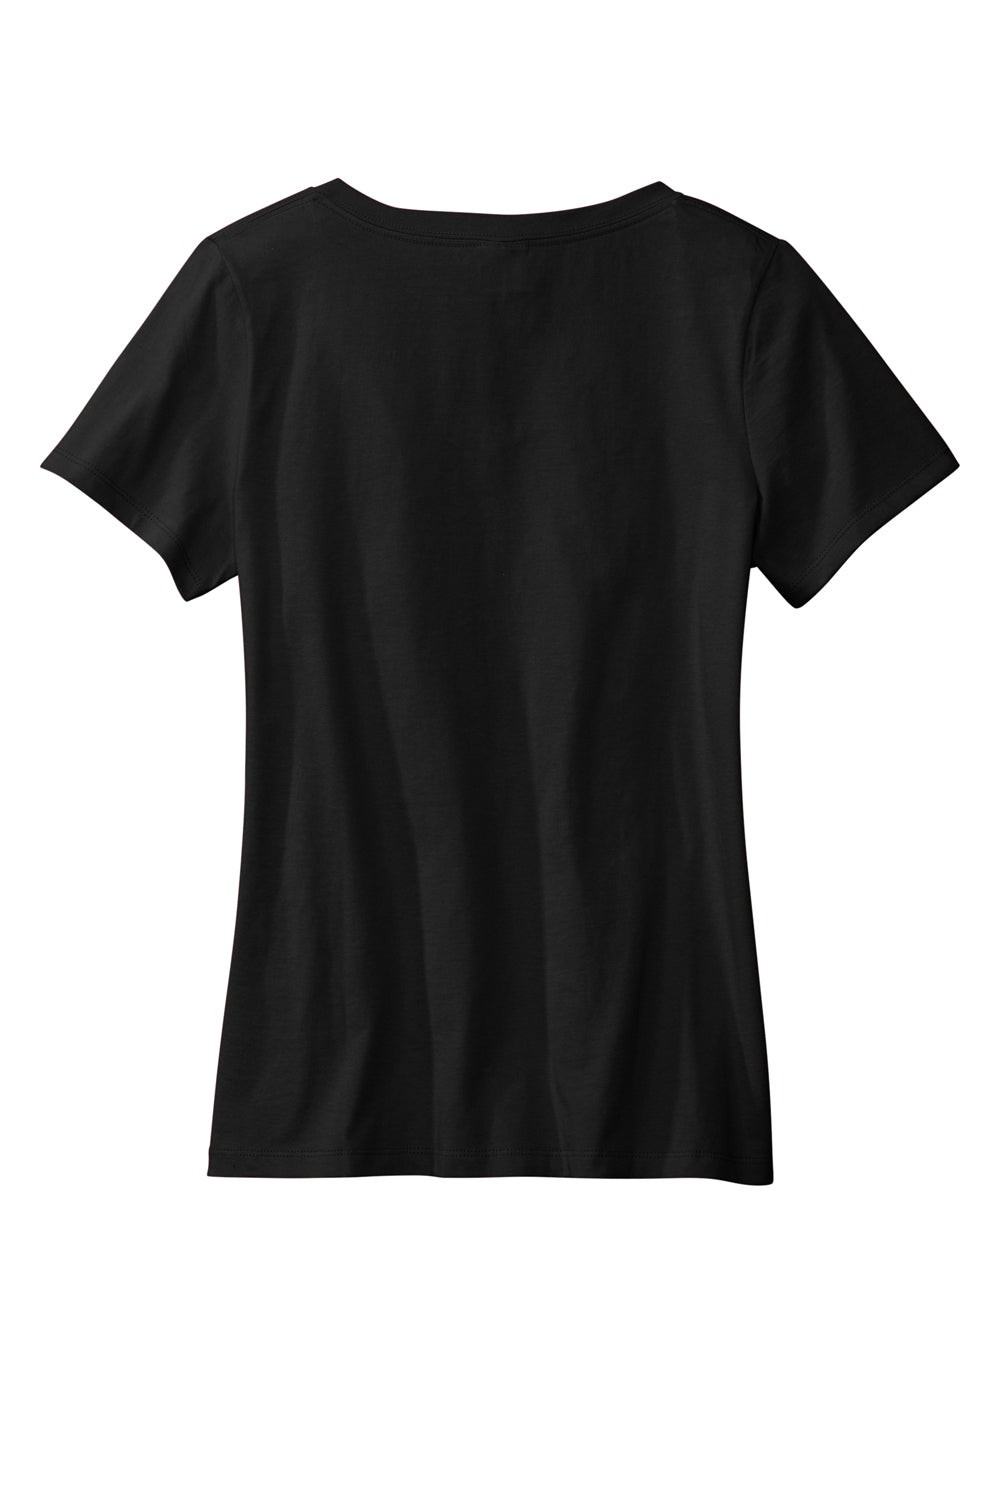 Volunteer Knitwear LVL45V USA Made Daily Short Sleeve V-Neck T-Shirt Deep Black Flat Back